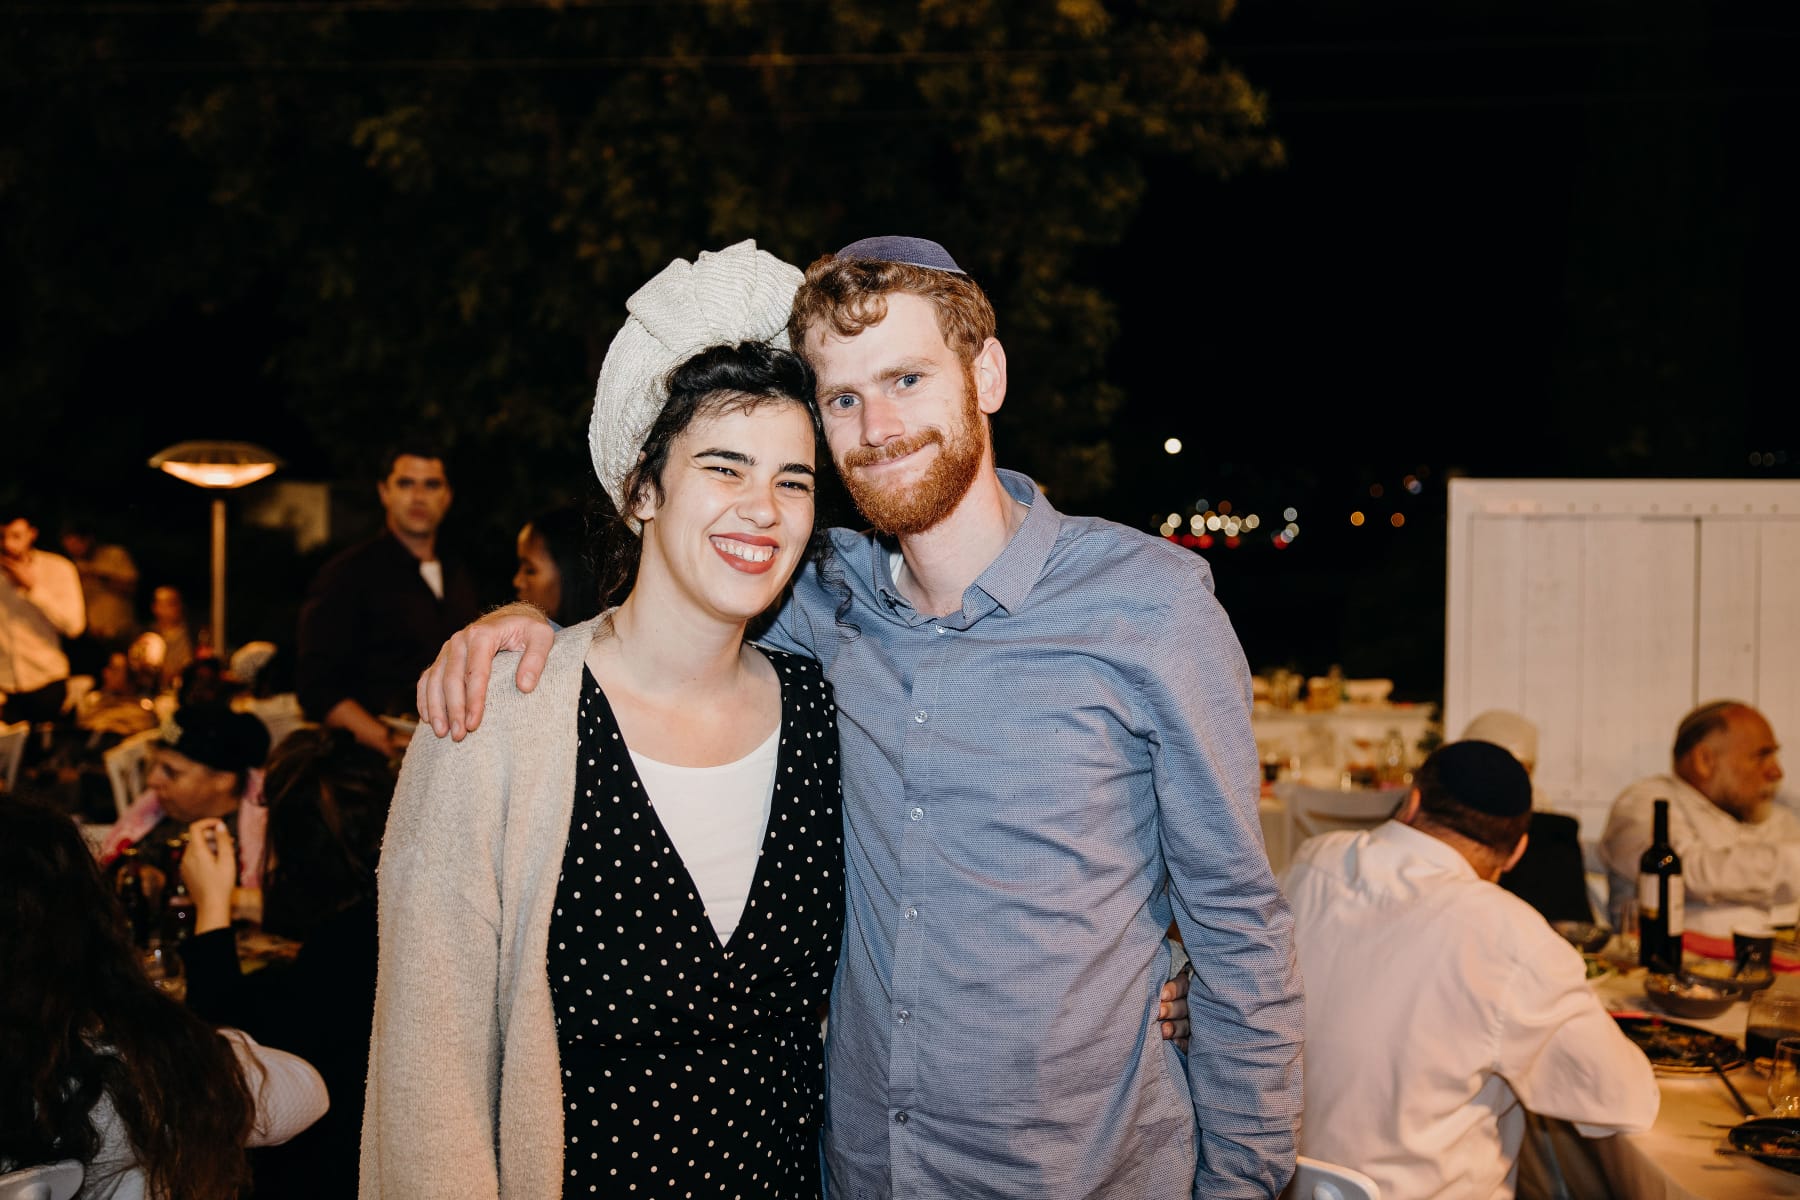 היכרויות וחתונות, גידול משפחה ויצירת קהילה צעירה ותוססת המעורבת ופועלת בירושלים: ההצלחה של כפרי הסטודנטים בעיר 